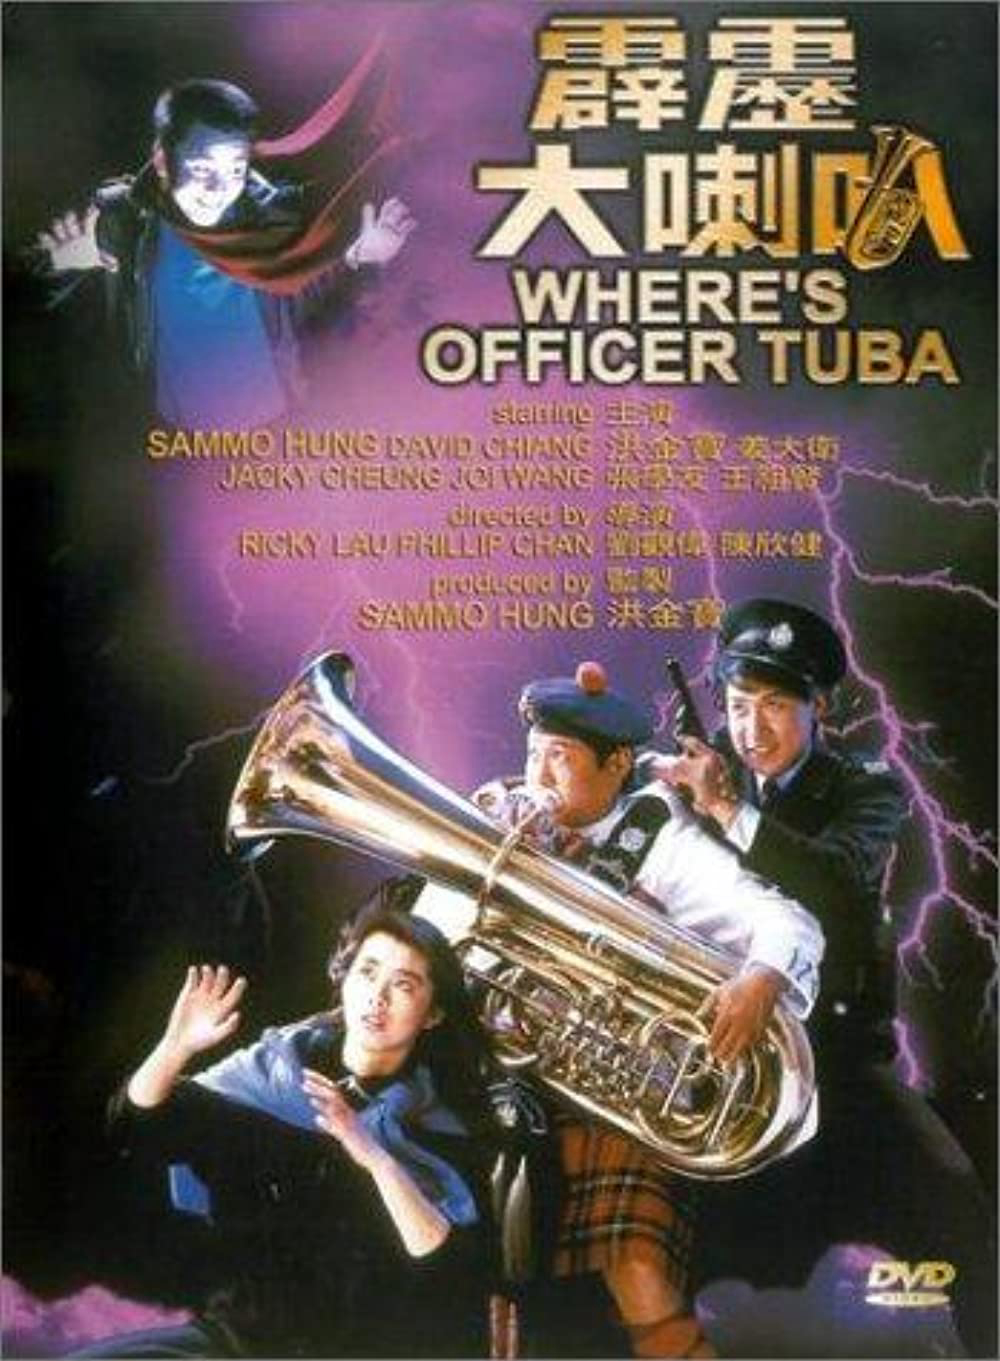 Where's Officer Tuba - Where's Officer Tuba